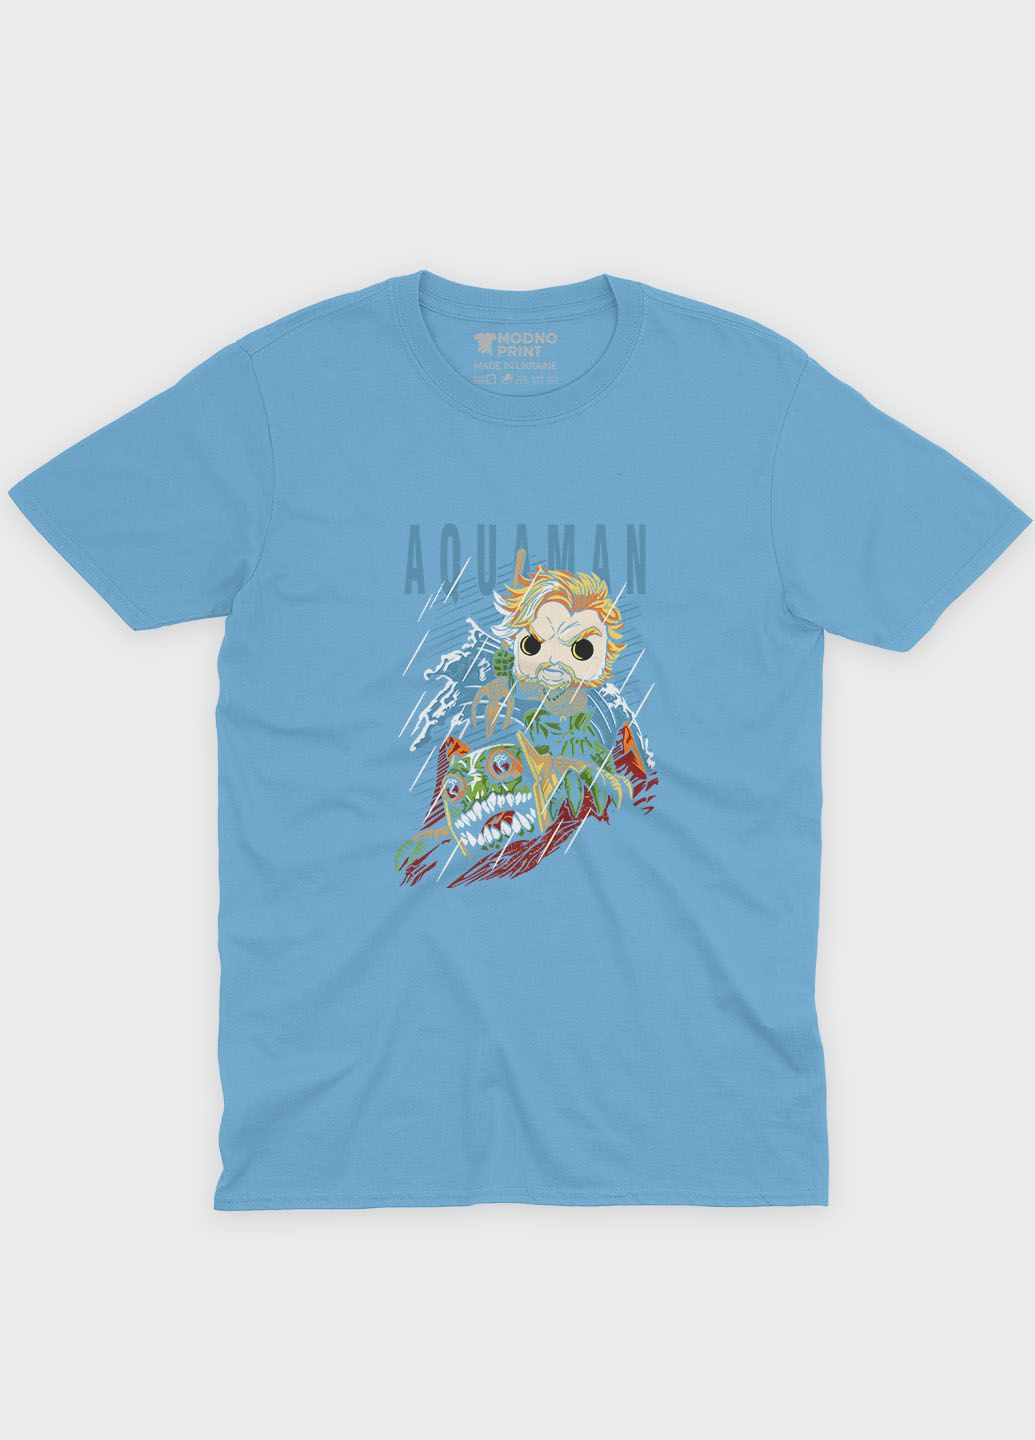 Голубая демисезонная футболка для девочки с принтом супергероя - аквамен (ts001-1-lbl-006-001-001-g) Modno